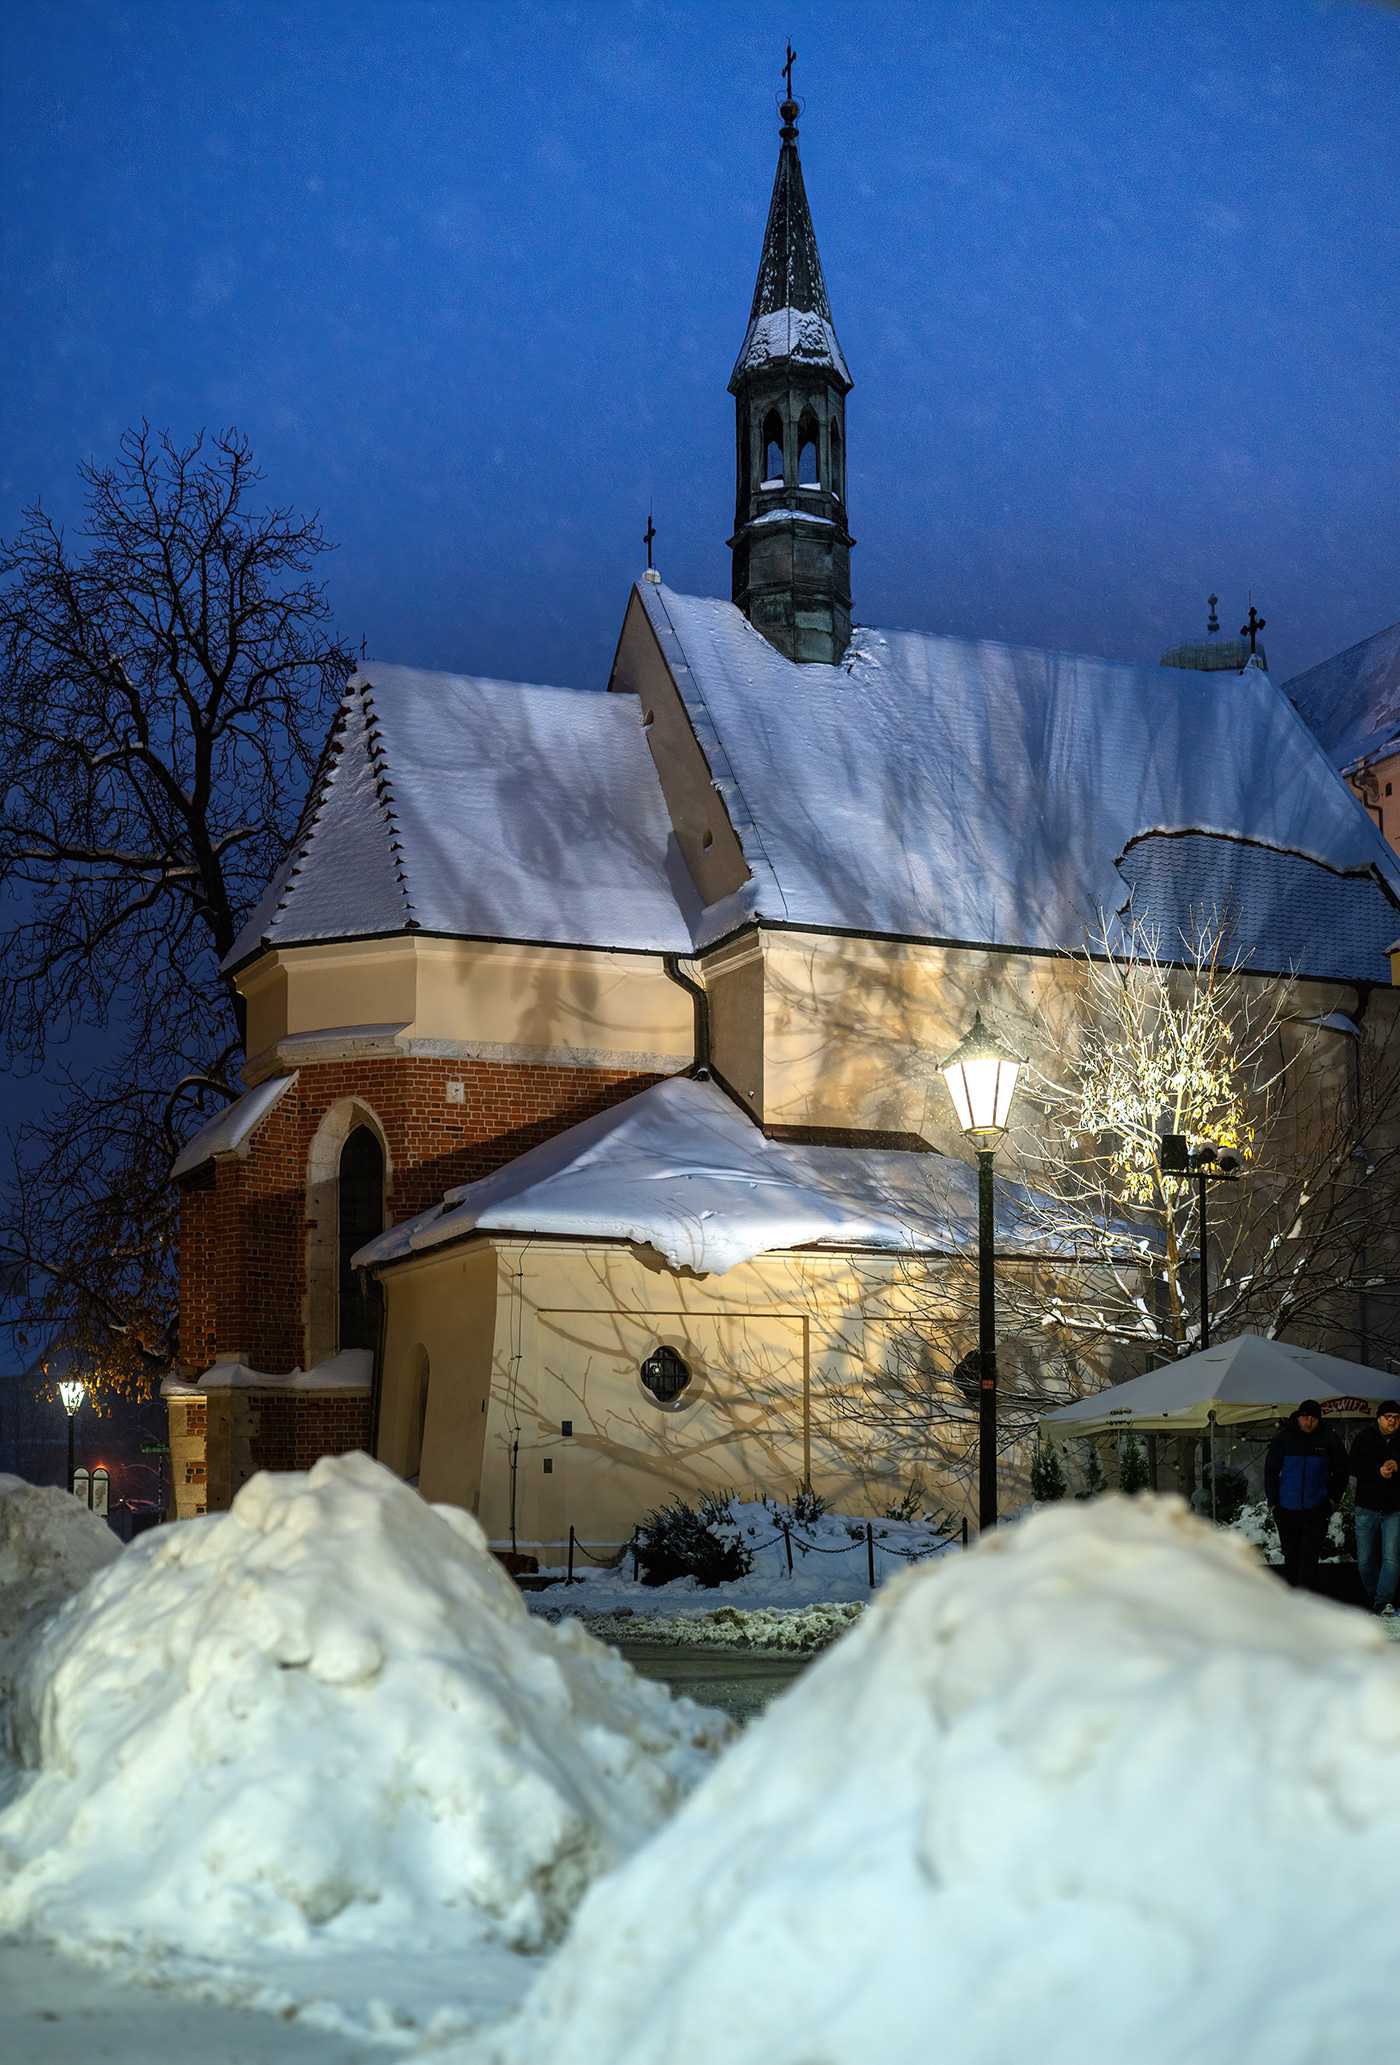 zima winter snow poland polska krakow śnieg